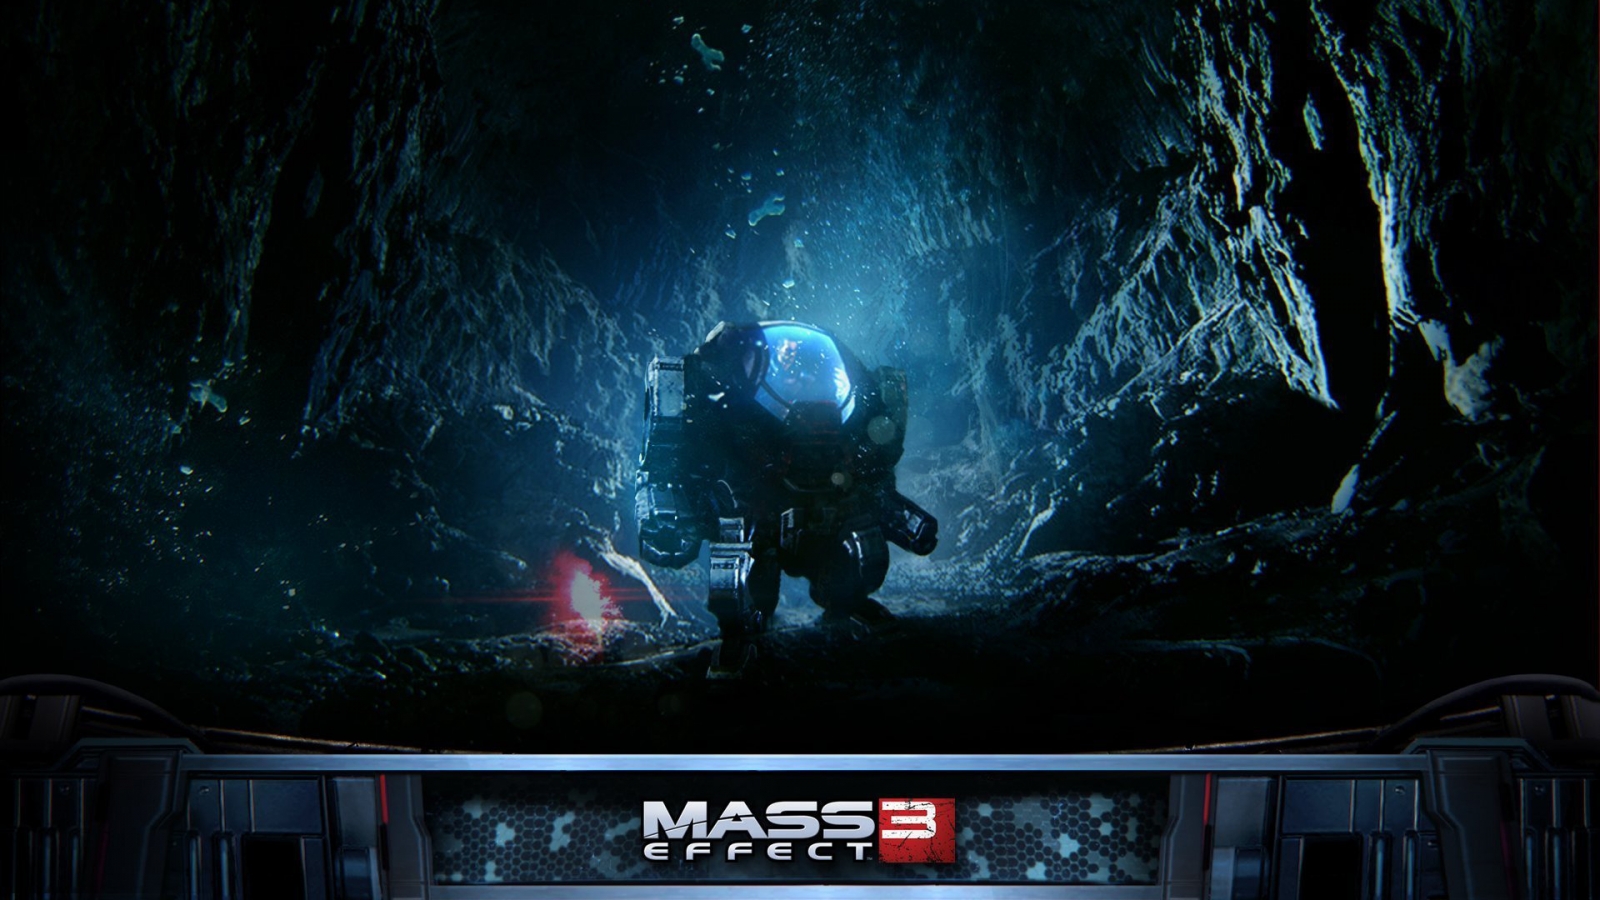 Mass Effect 3 Robot for 1600 x 900 HDTV resolution